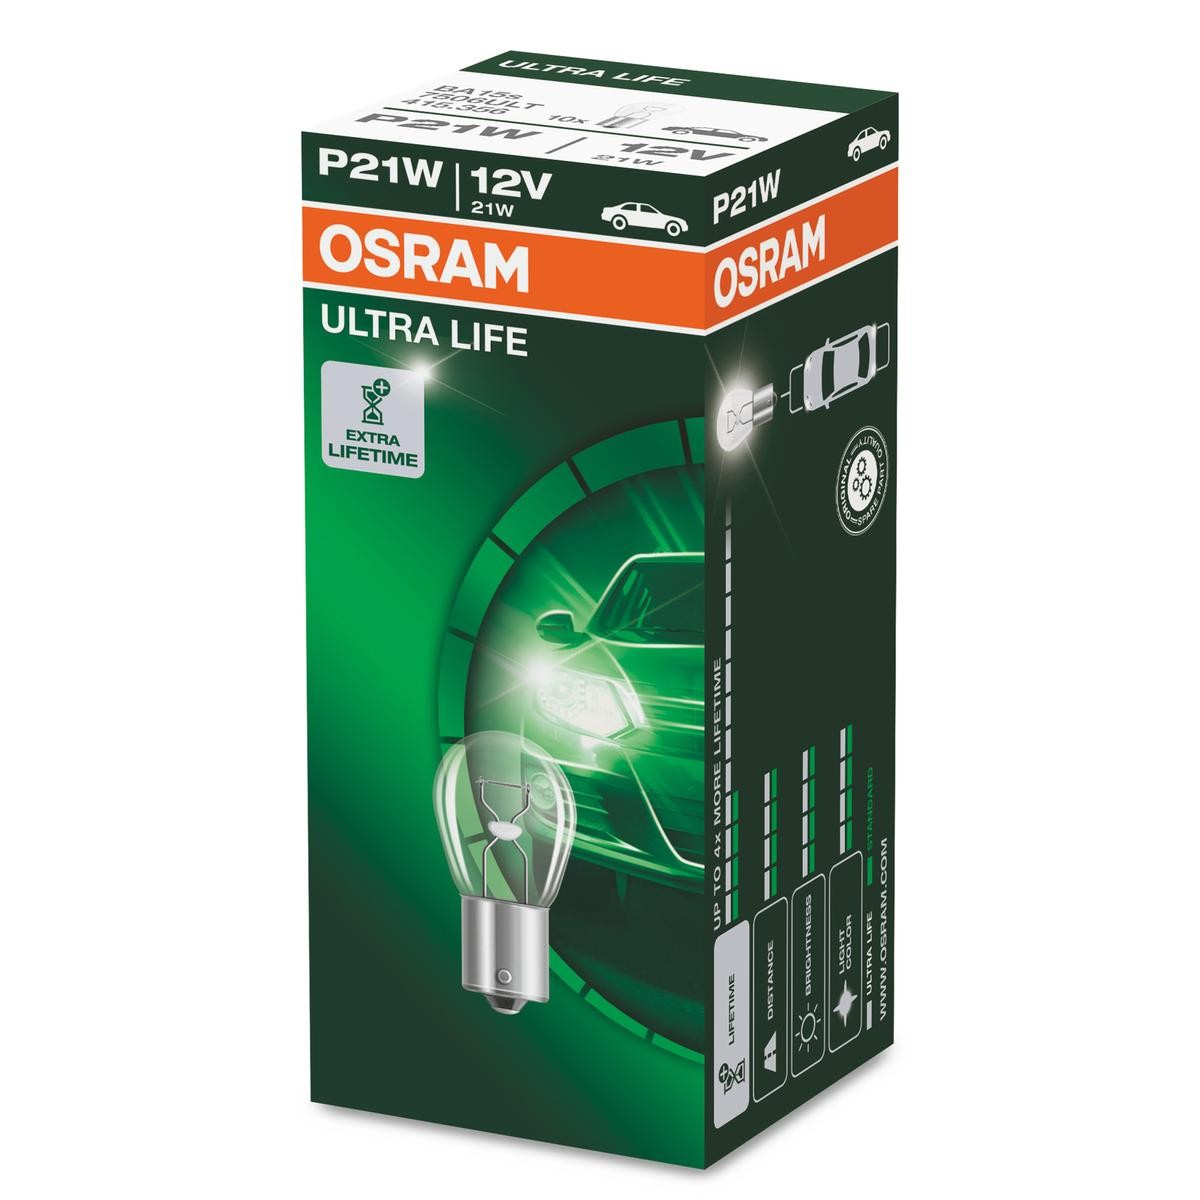 OSRAM Original Line Glühbirne P21/5W 12V 21/5W - x10 - günstig kaufen ▷  FC-Moto